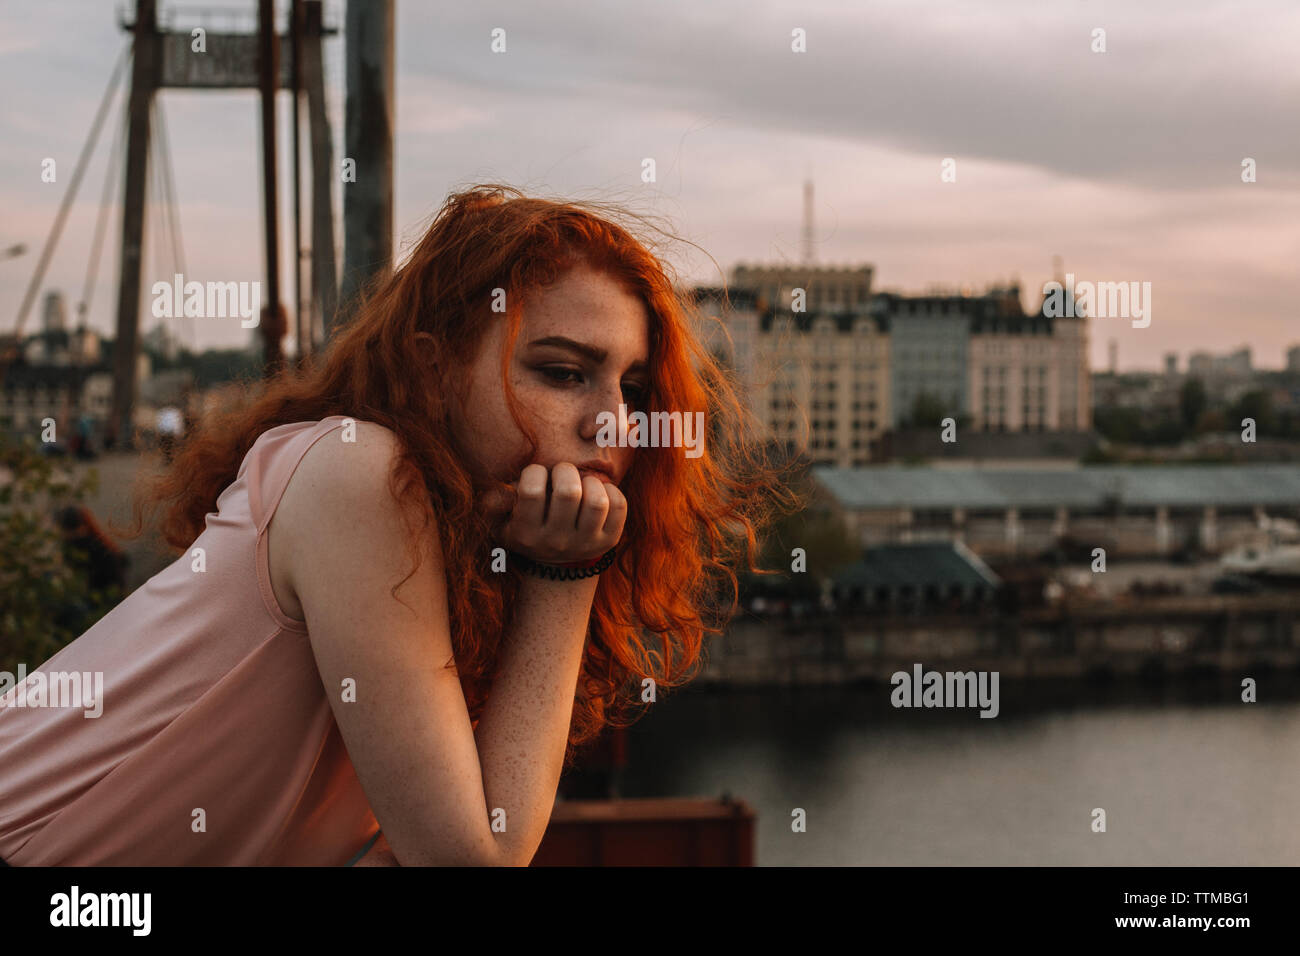 Retrato de niña de cabello rojo reflexivo apoyado en la baranda de puente Foto de stock